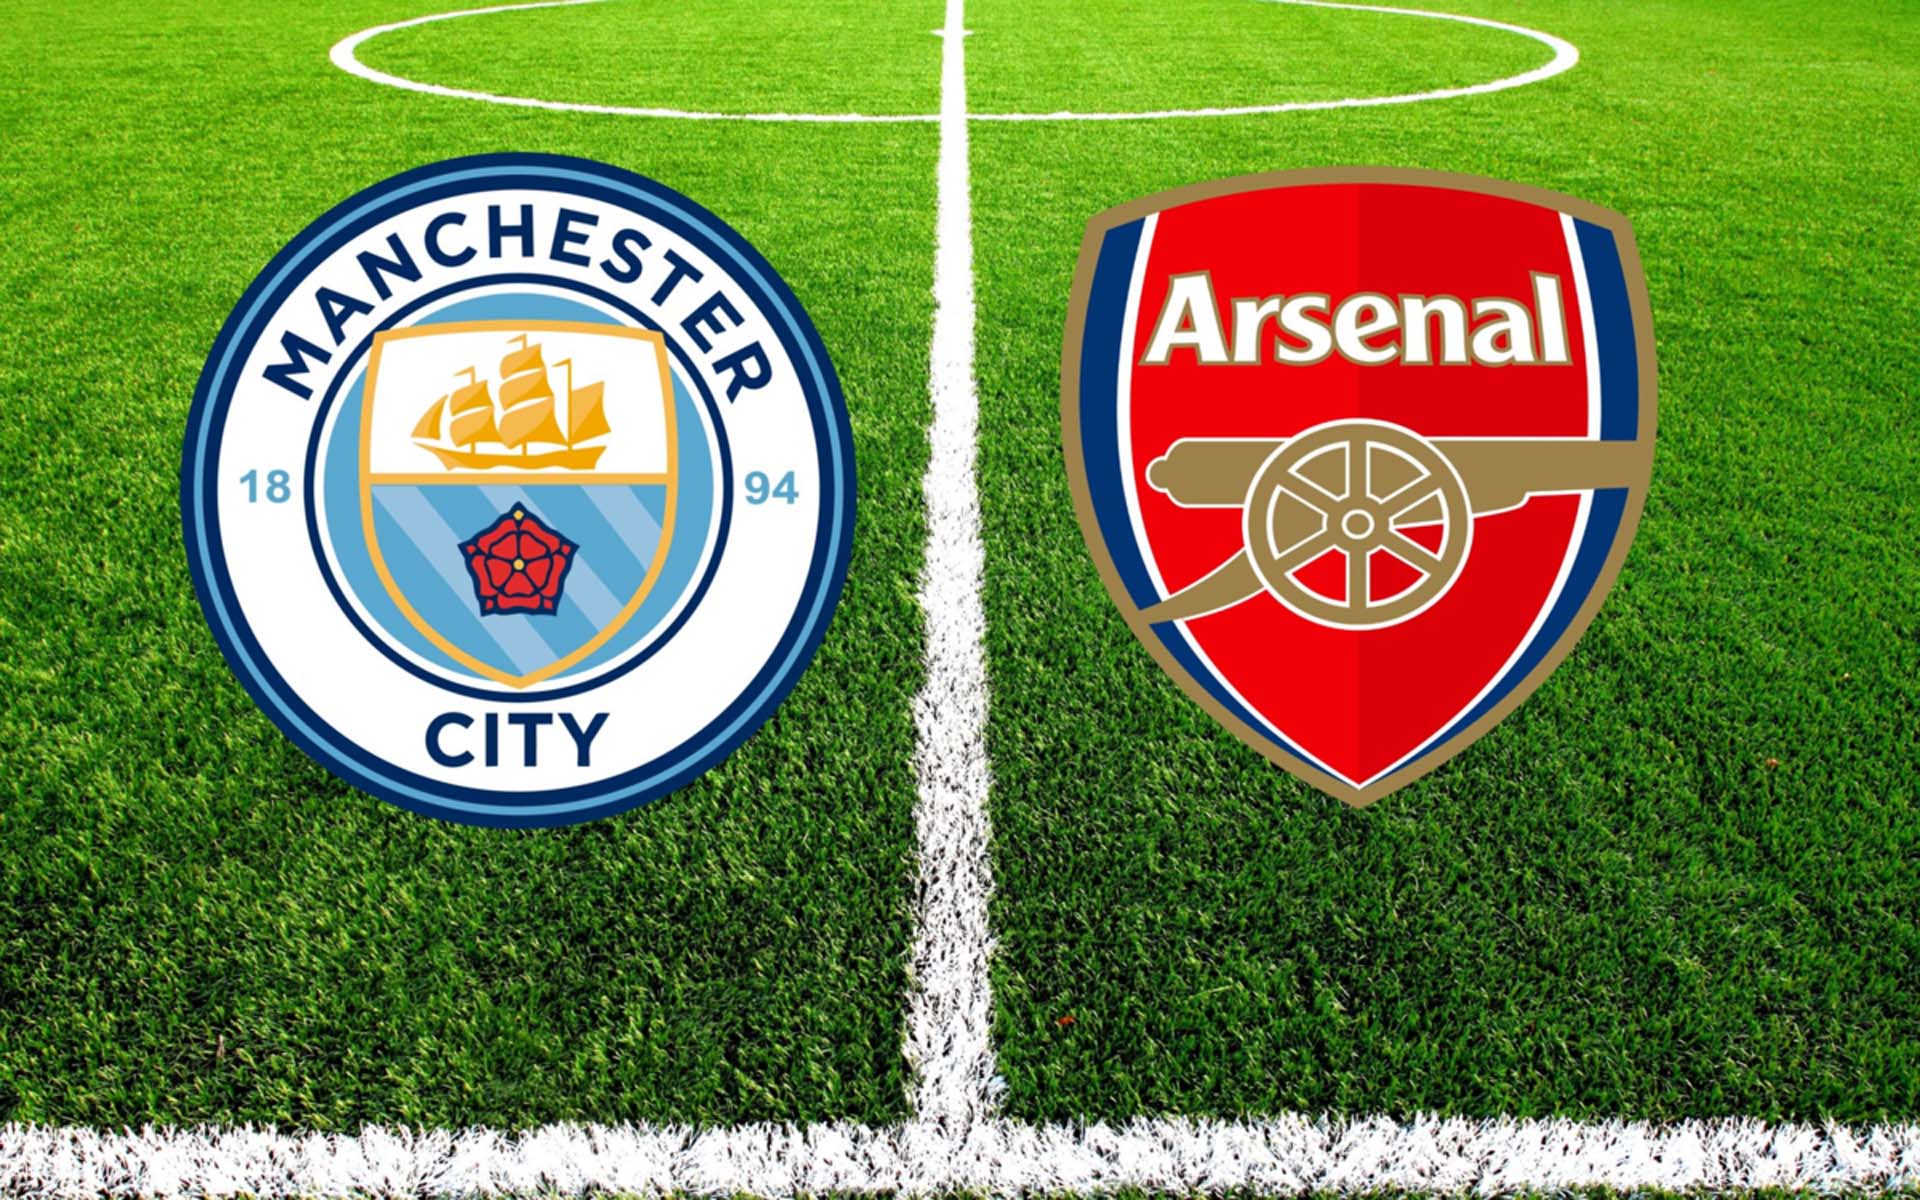 İngiltere Premier Lig: Arsenal - Manchester City canlı izle | Arsenal - Manchester City maçı S Sport, S Sport Plus canlı yayın izle linki